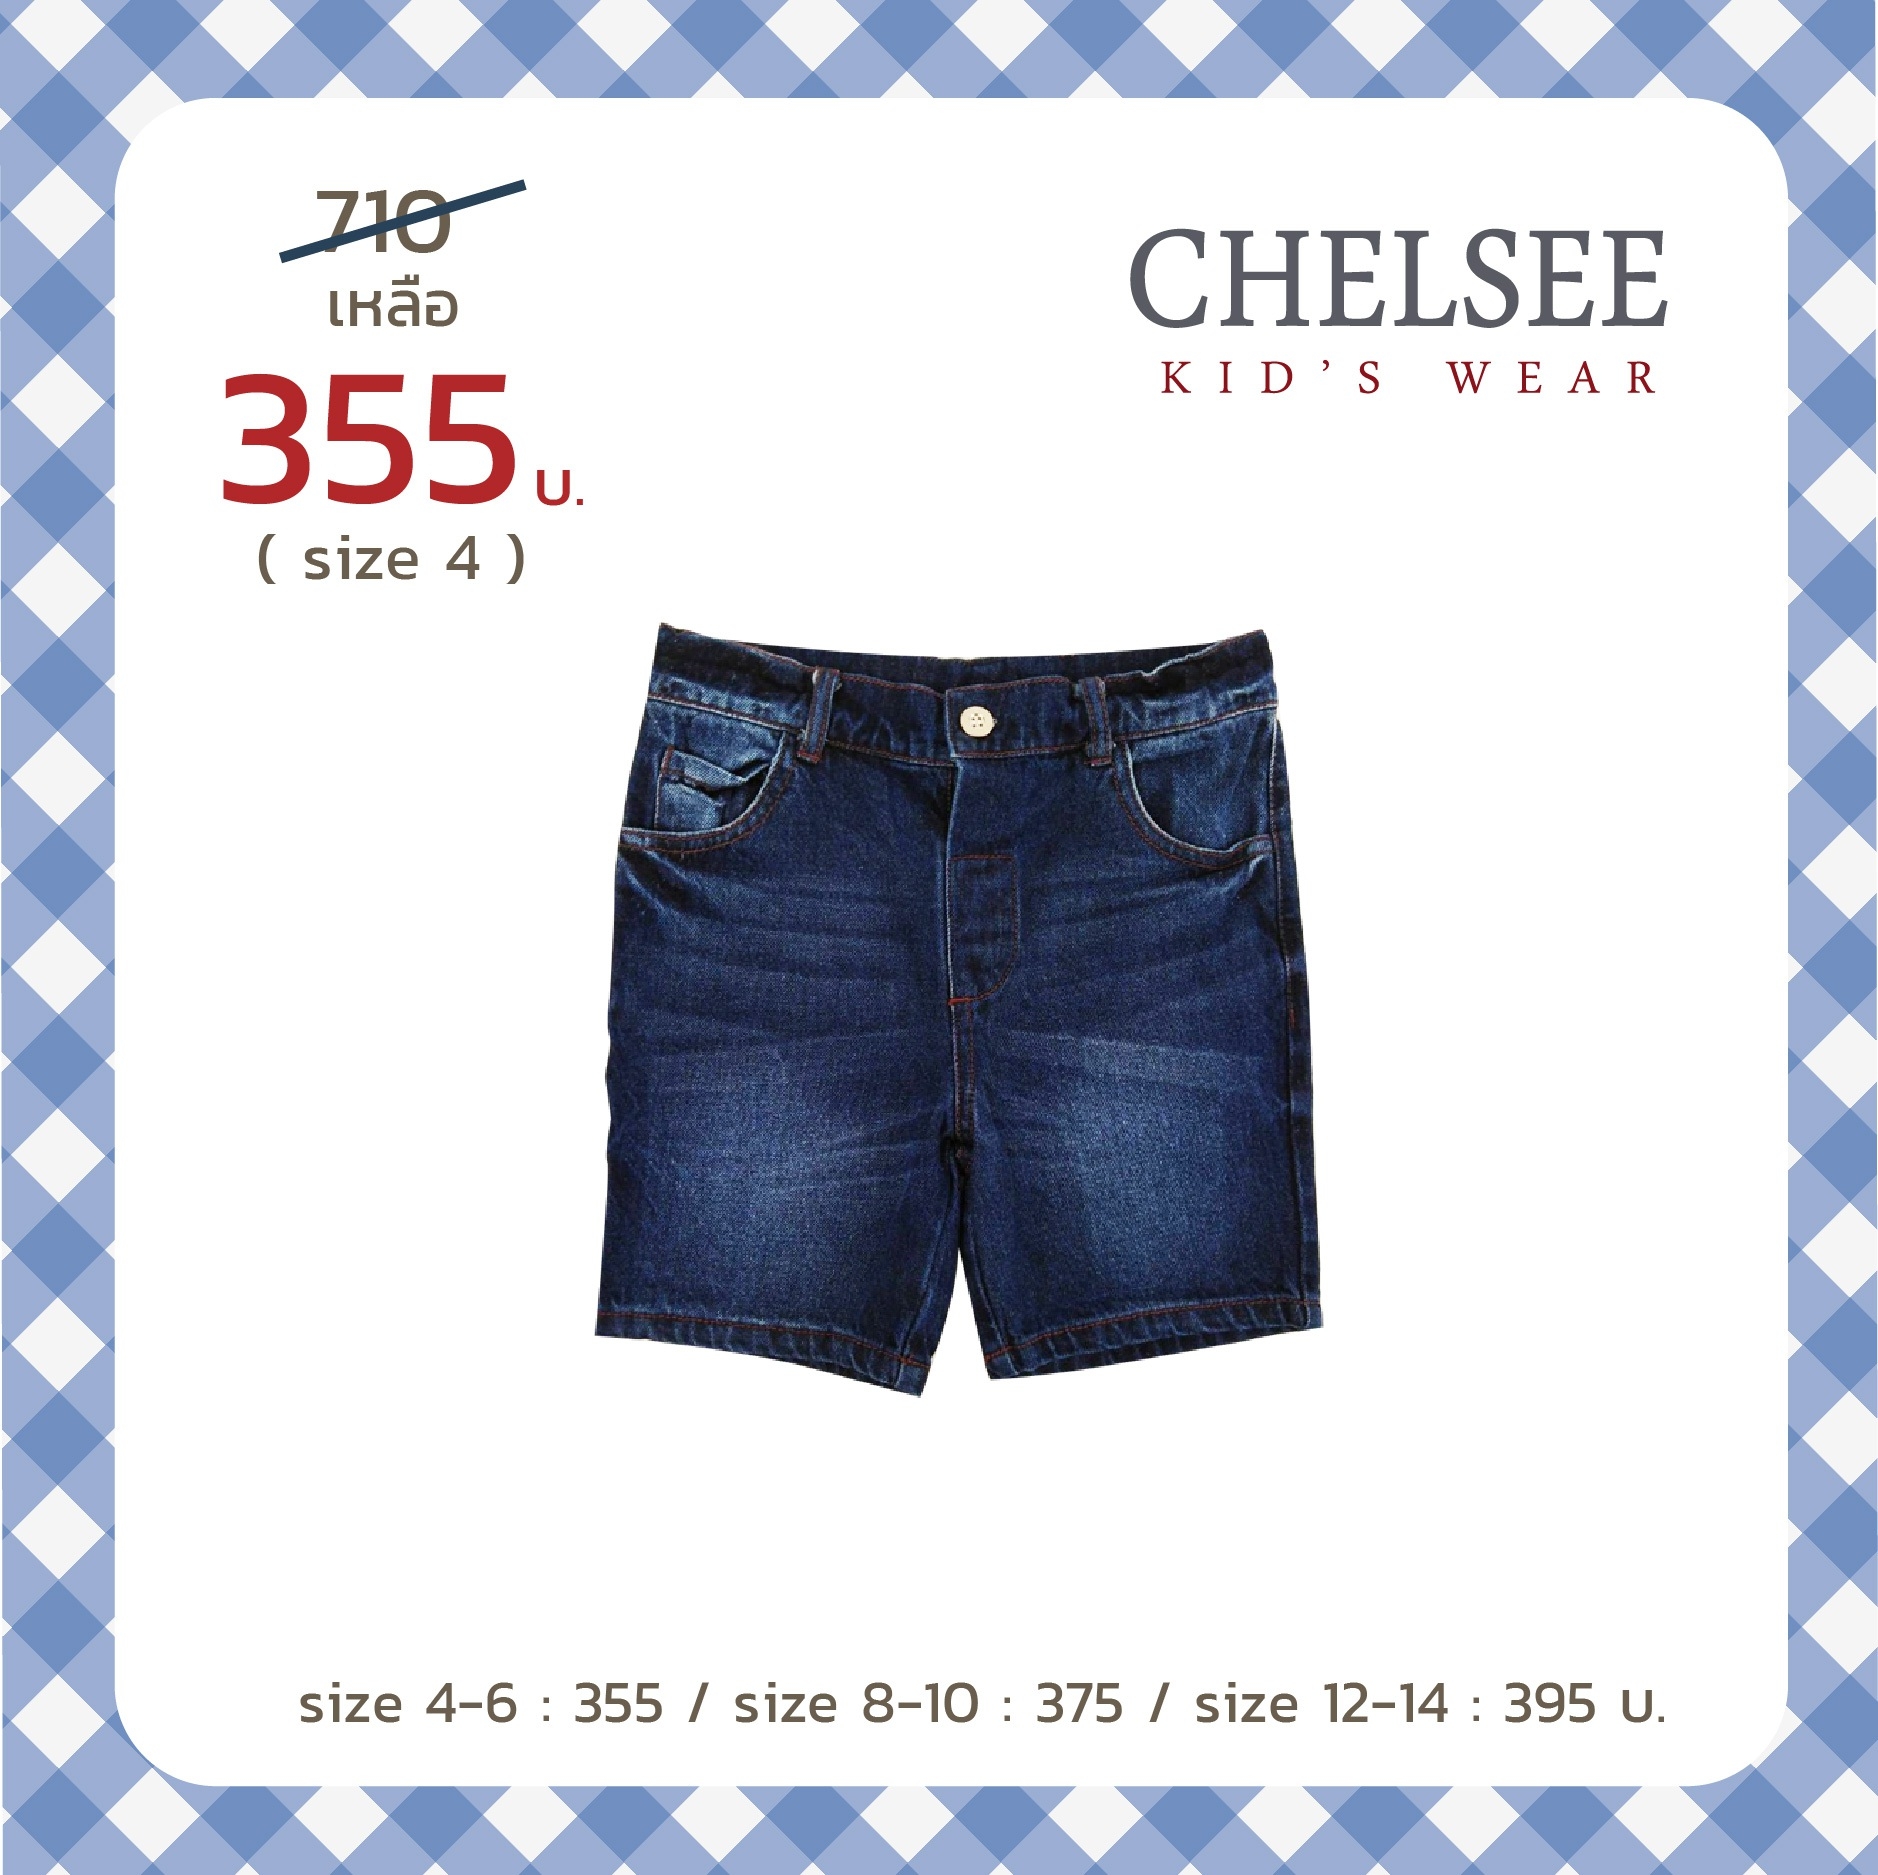 Chelsee กางเกงยีนส์ขาสั้น เด็กผู้ชาย เอวกระดุม เสื้อผ้าเด็กโต ผ้านุ่ม ราคาสบายกระเป๋า งานห้างมาตรฐานการผลิตในไทย